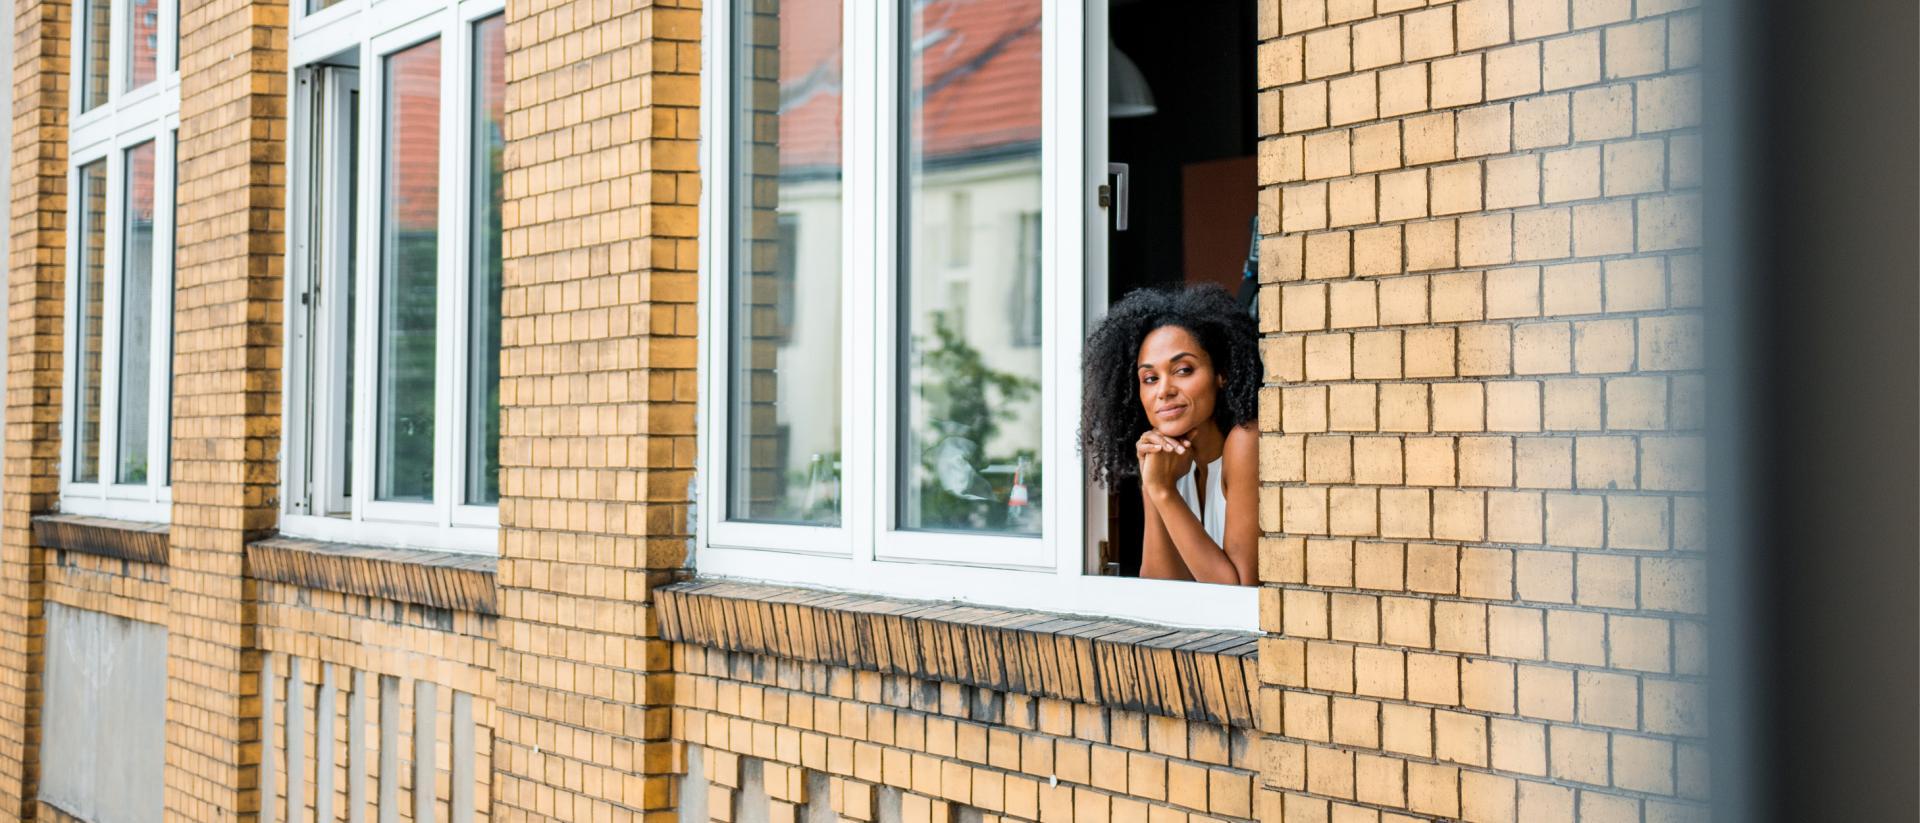 En kvinna står vid fönstret och tittar utåt